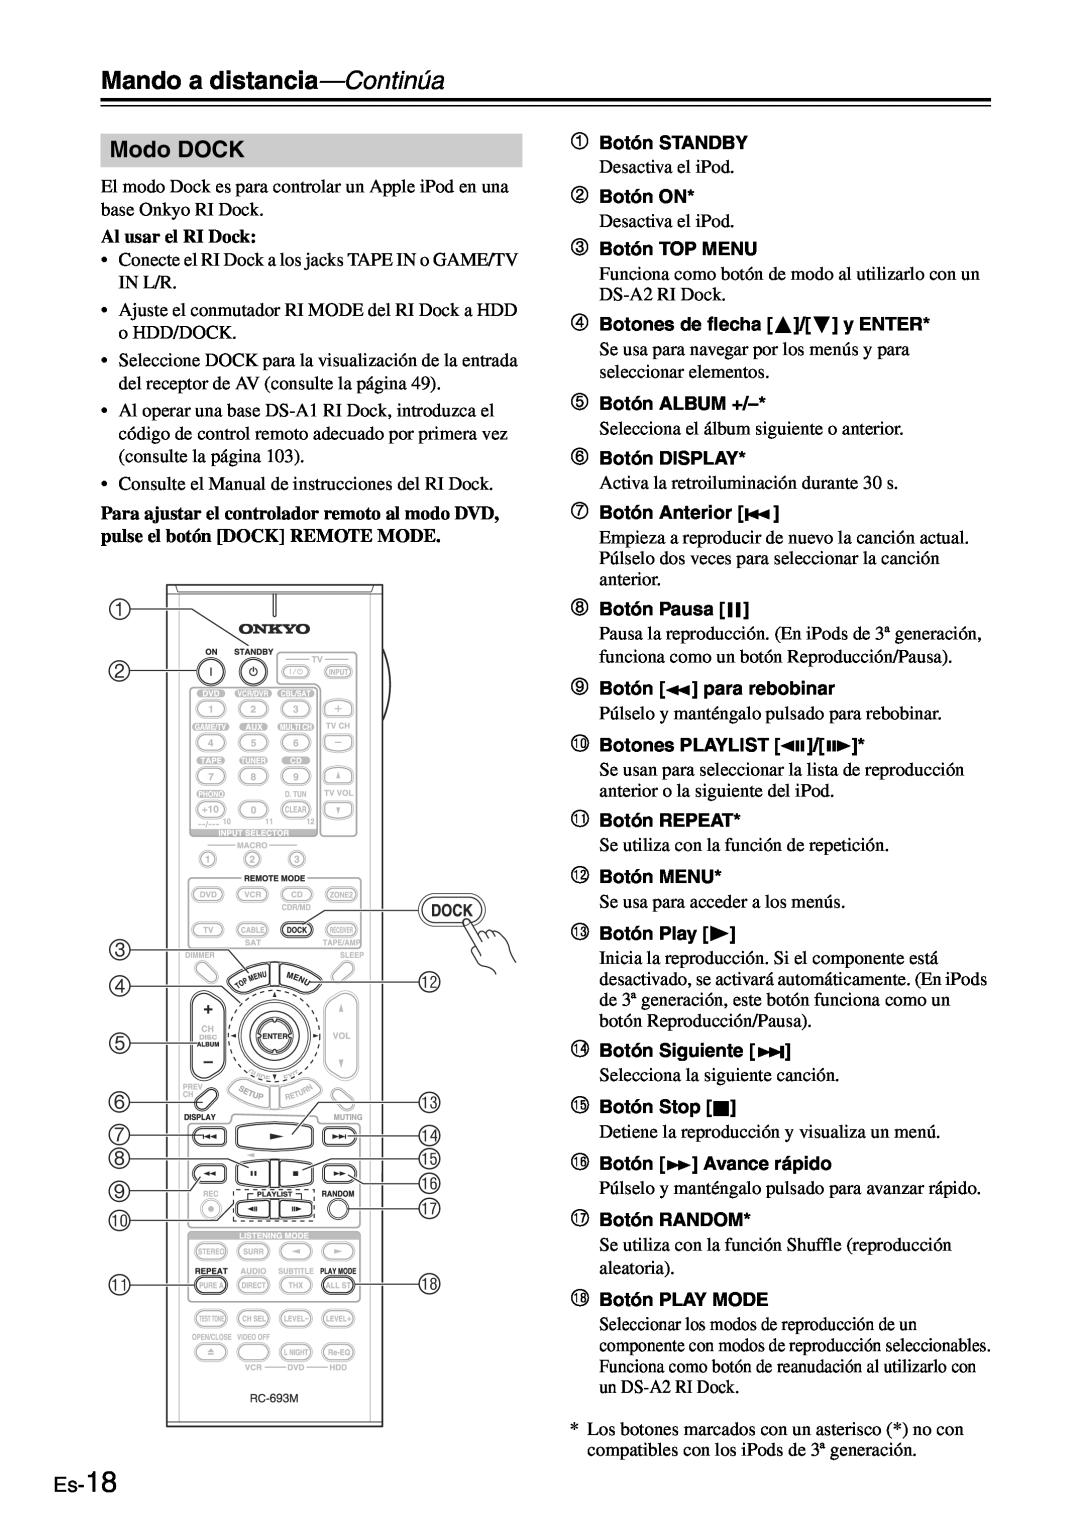 Onkyo TX-SR705 manual Modo DOCK, Es-18 